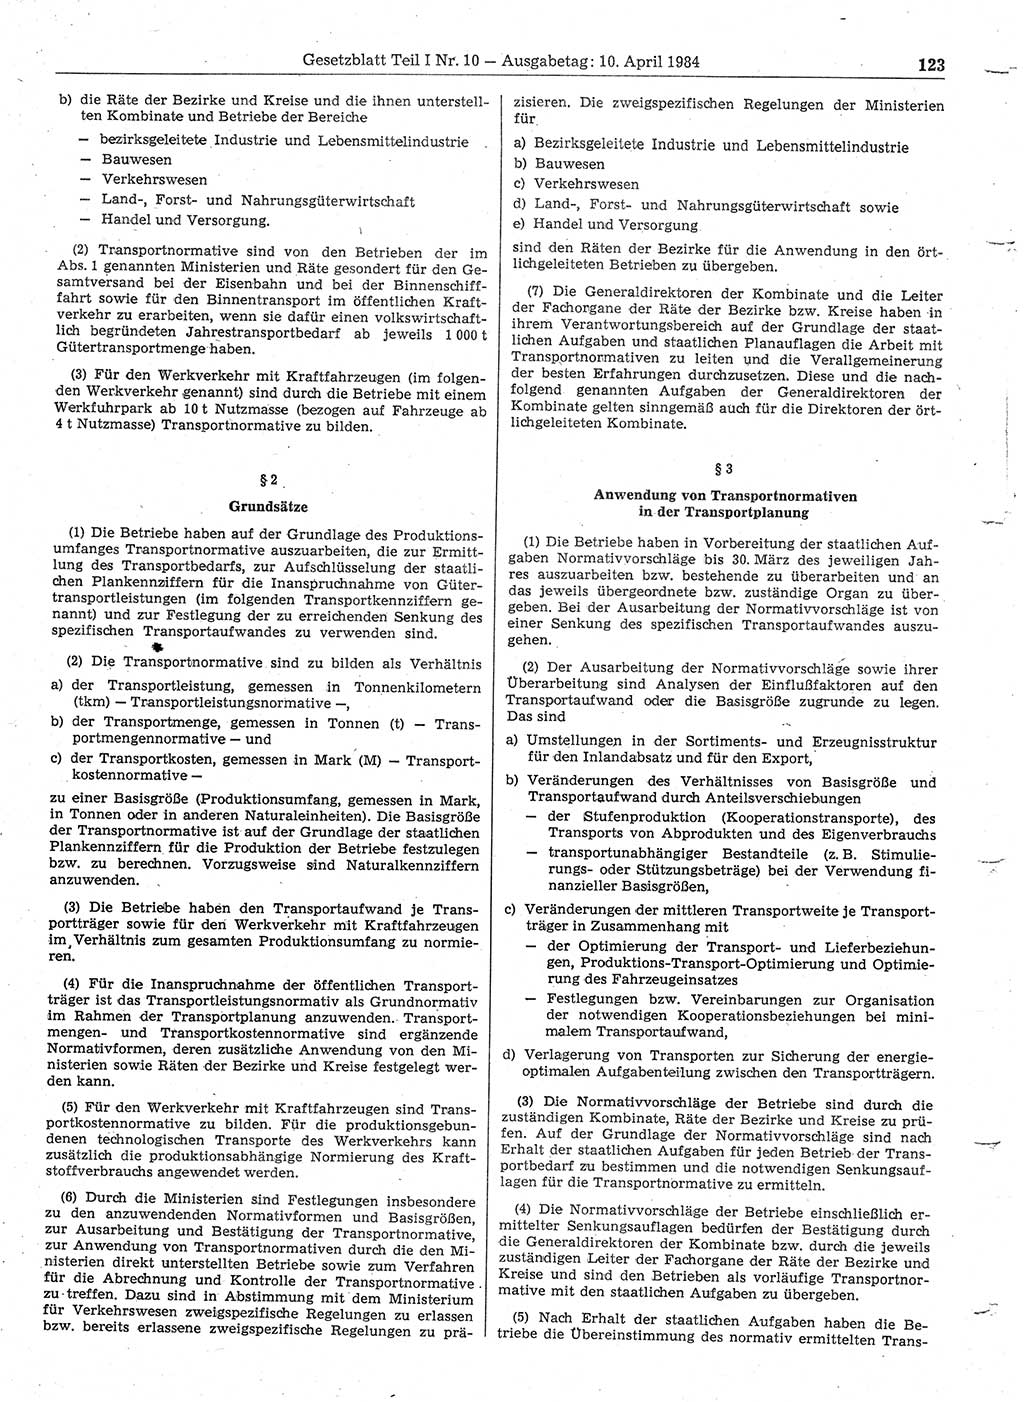 Gesetzblatt (GBl.) der Deutschen Demokratischen Republik (DDR) Teil Ⅰ 1984, Seite 123 (GBl. DDR Ⅰ 1984, S. 123)